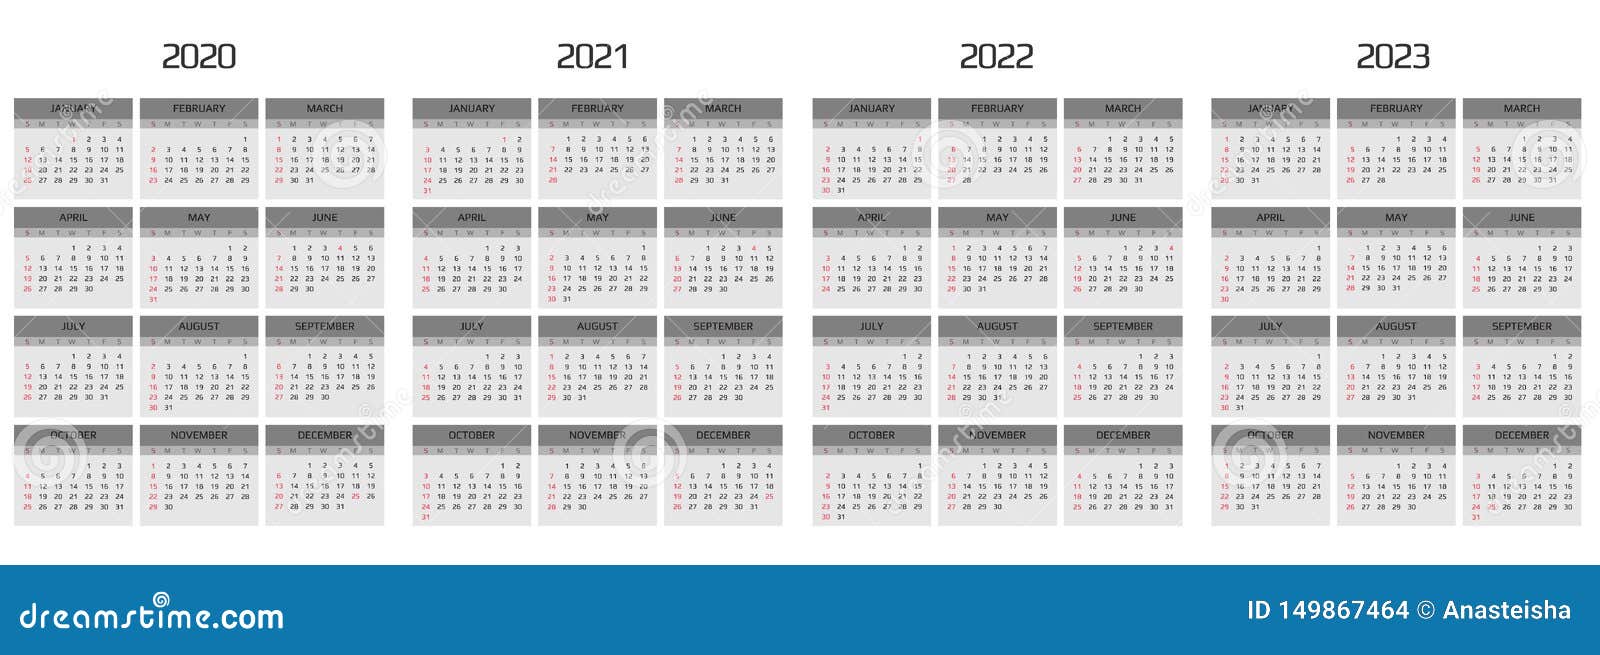 Даты недель 2020. Календарь 2020 2021 2022. Календарь 2021 2022 2023. Календарь 2020-2022. Календарь 2020-2023.